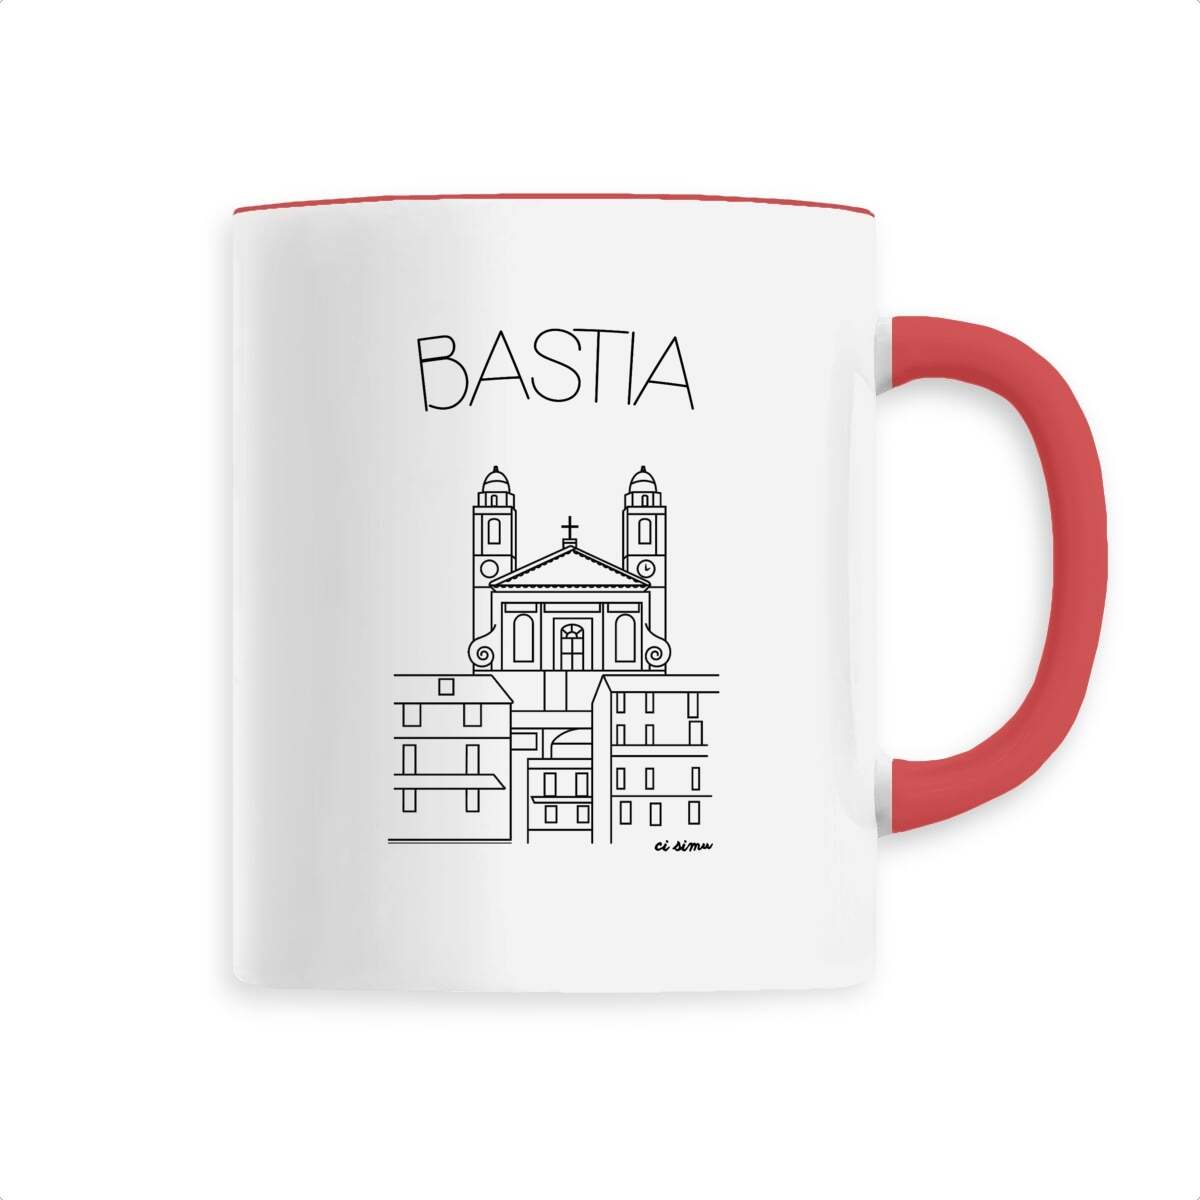 Mug de Bastia 